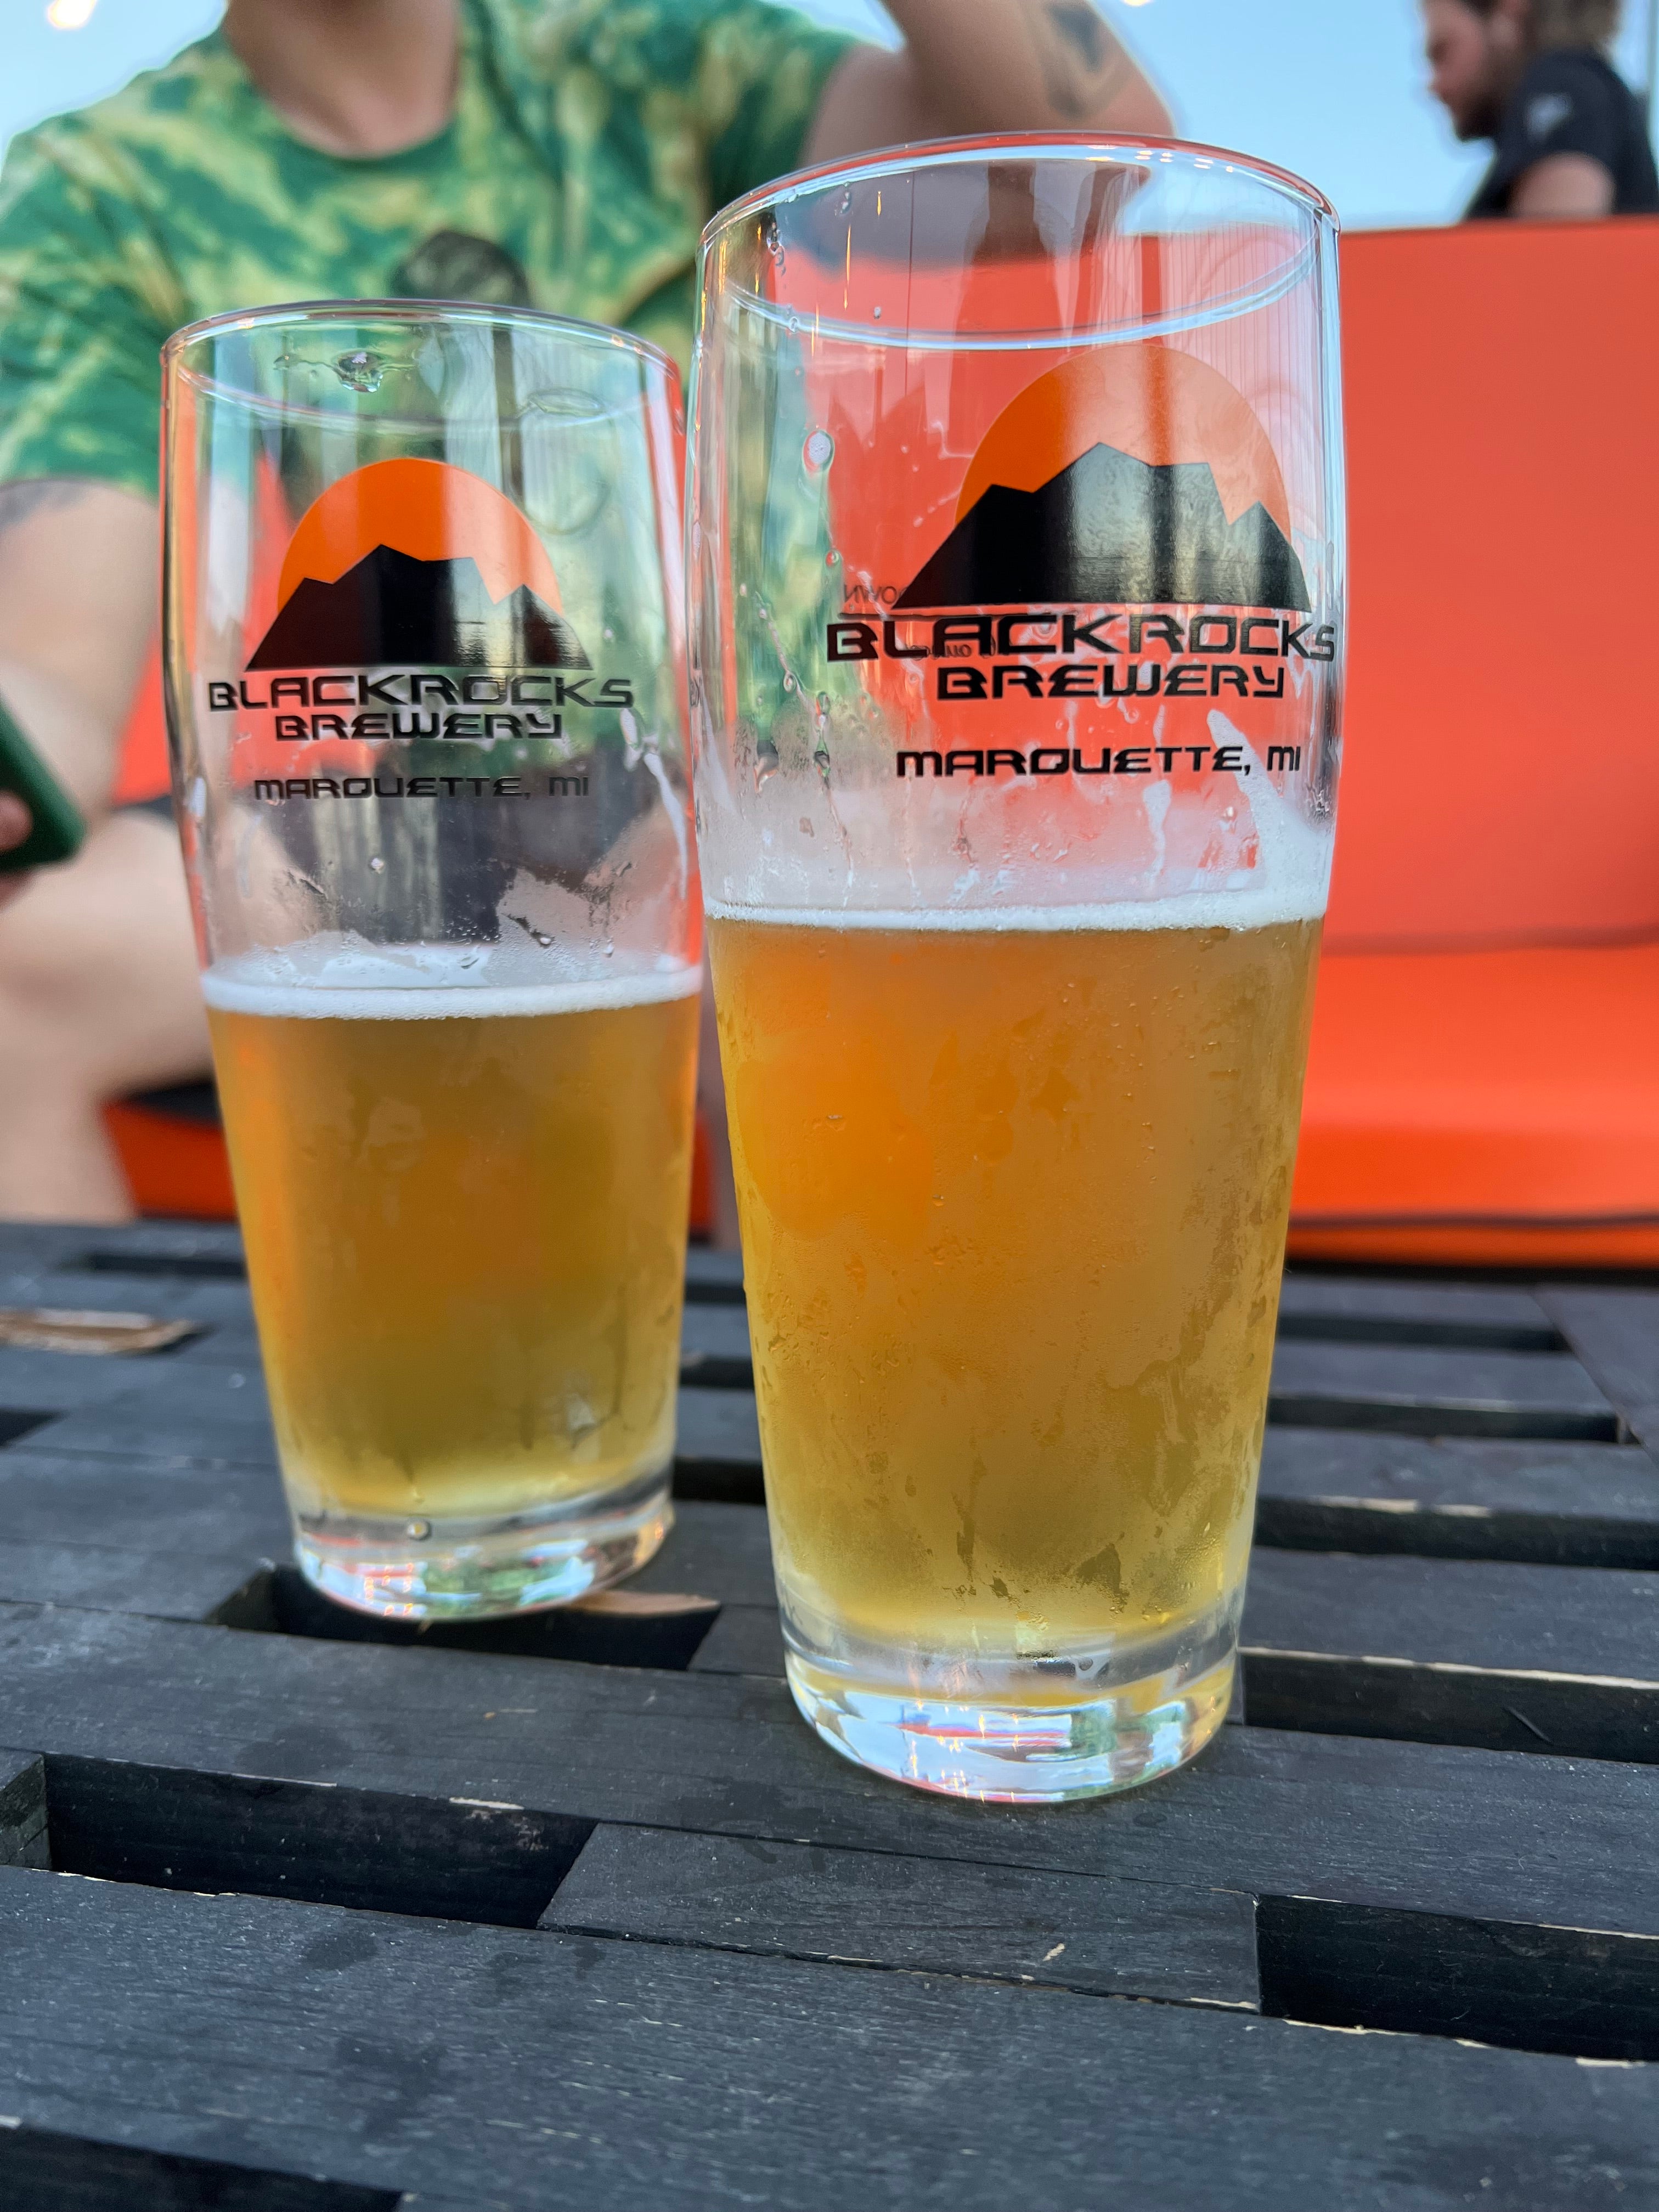 Post race beers at Black Rocks